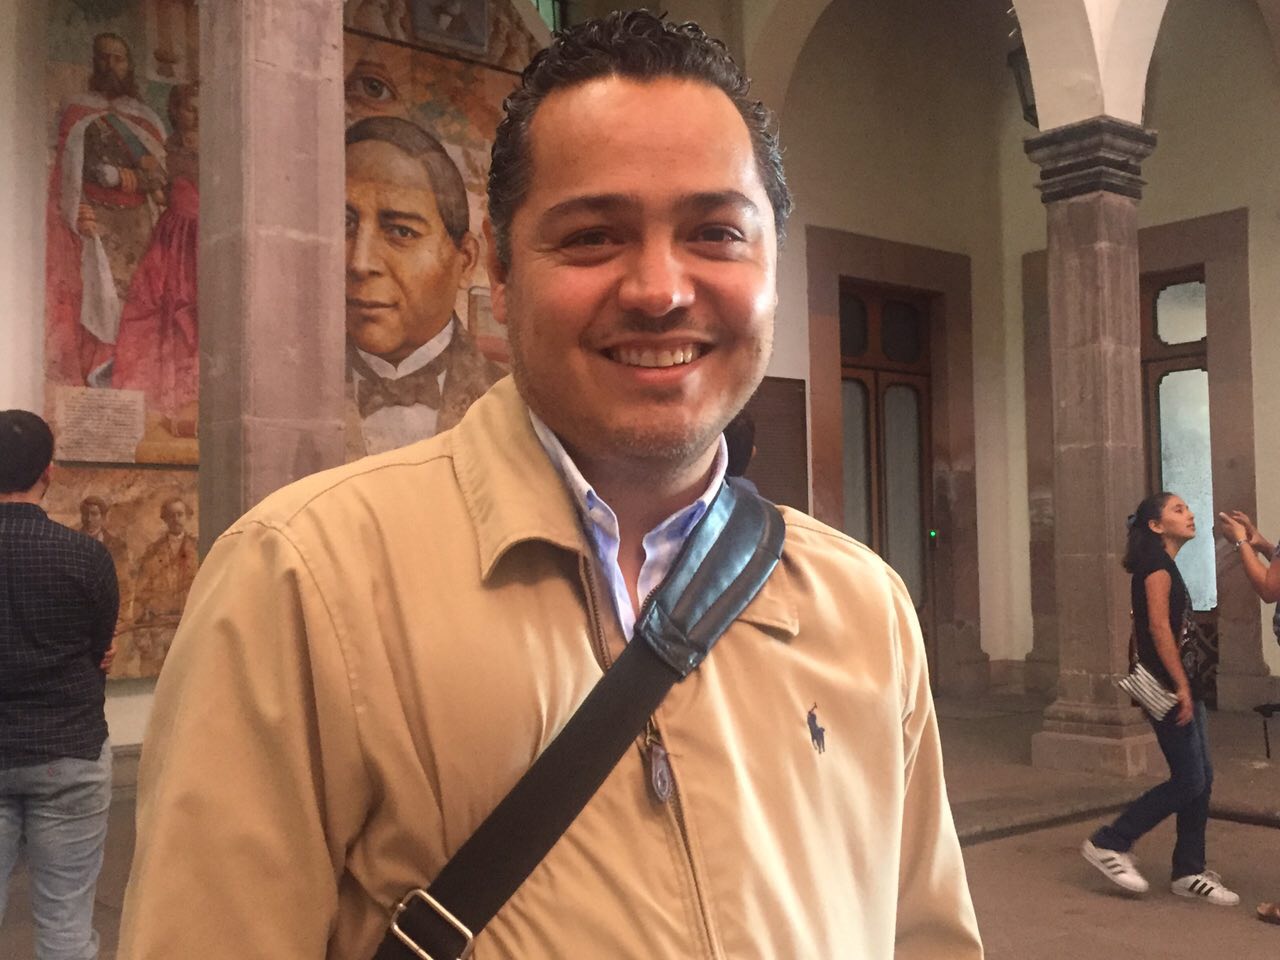  Condiciones de centros de internamiento y “anexos” son responsabilidad de sector salud: Enrique Correa